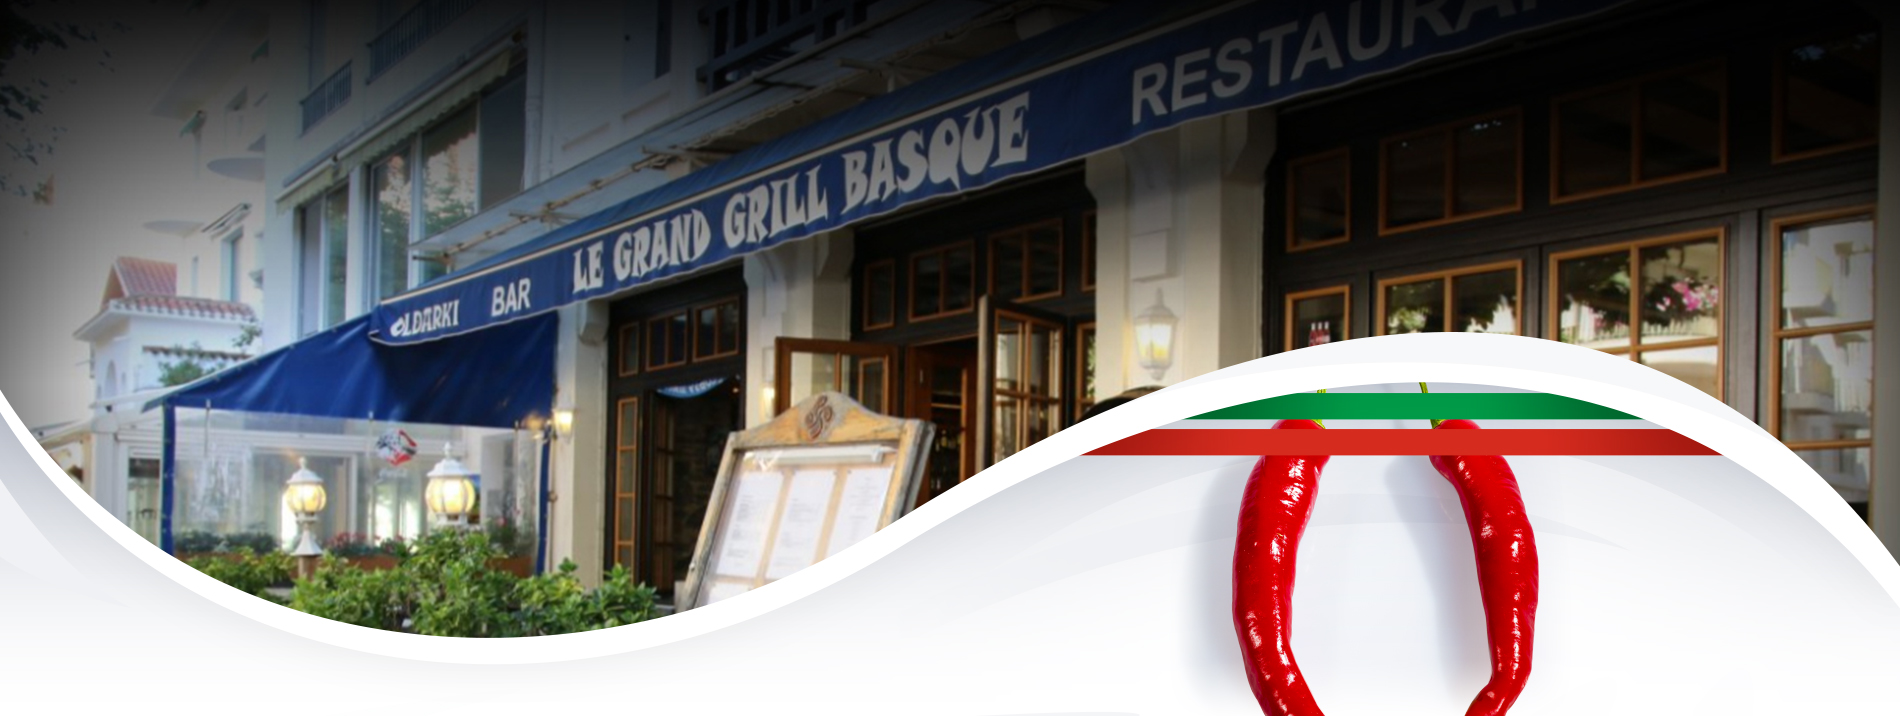 Le Grand Grill Basque